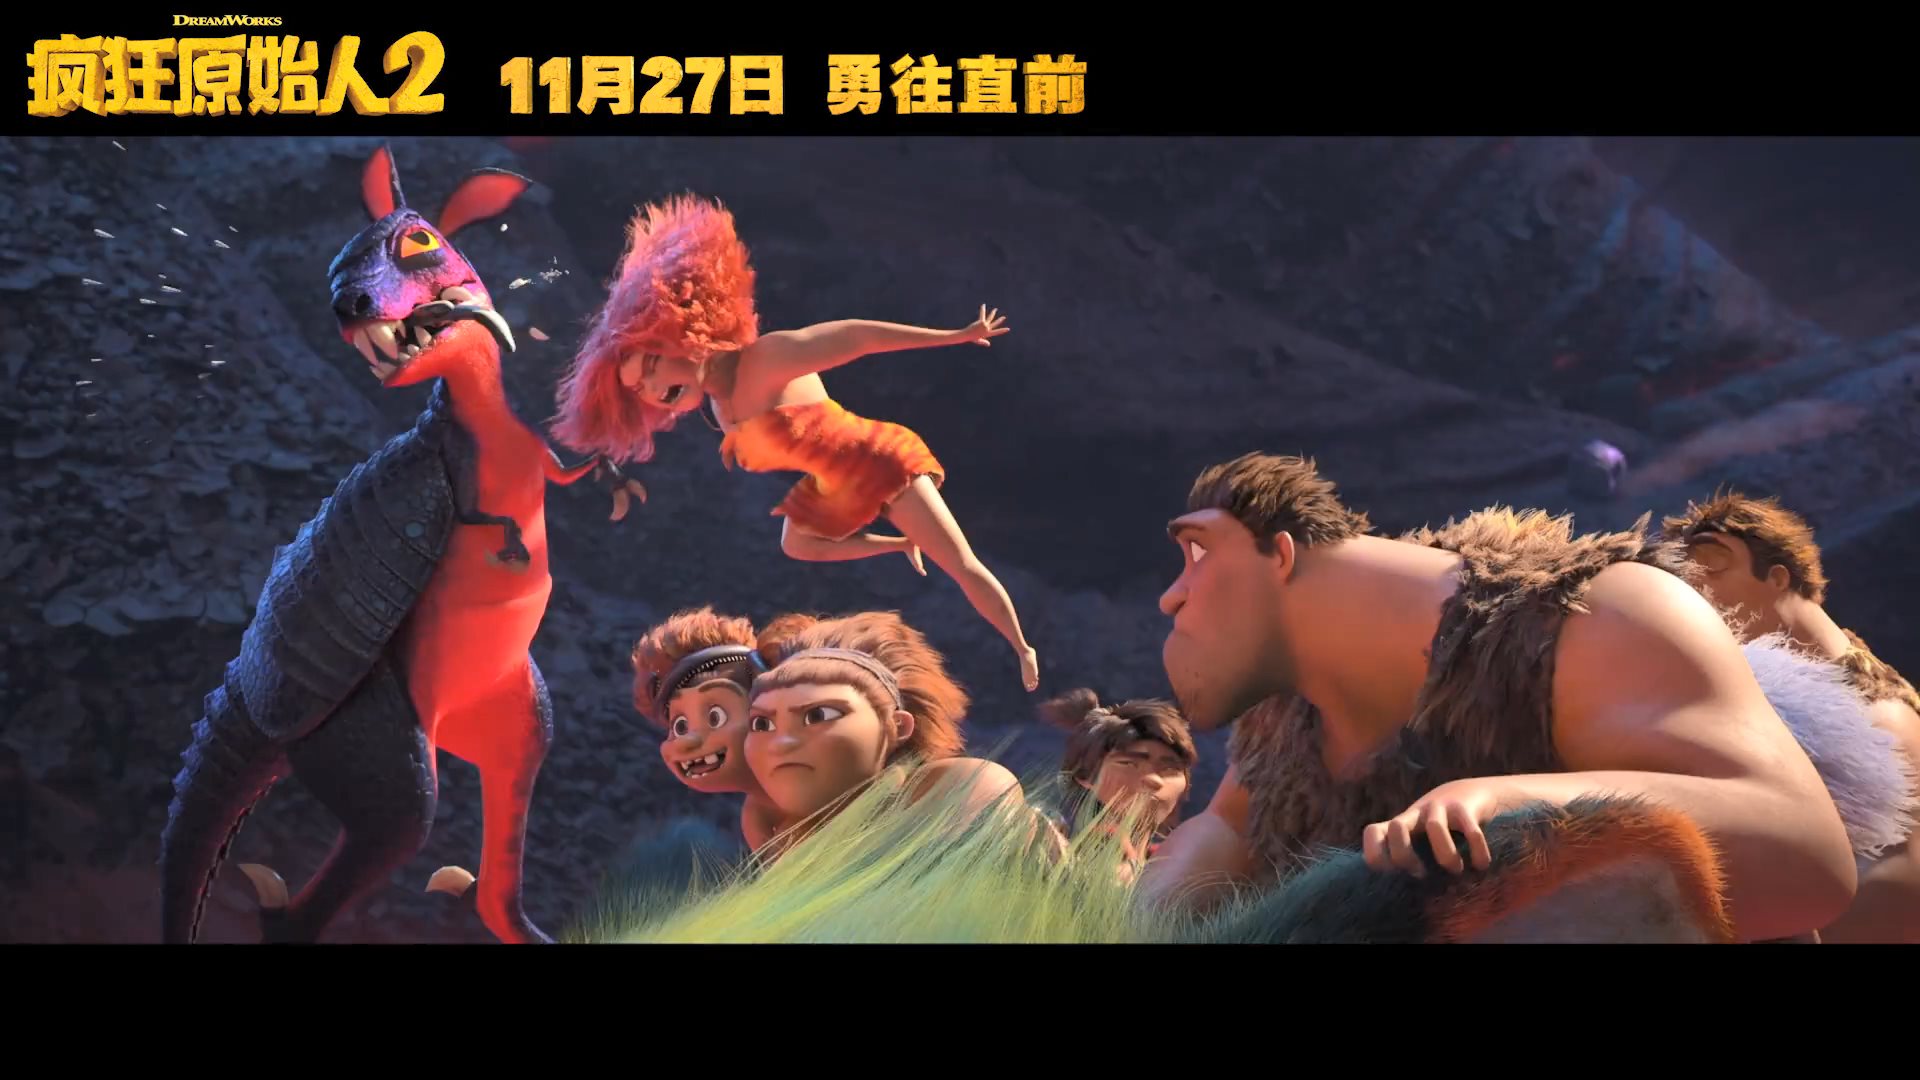 梦工厂动画《疯狂原始人2》国内定档 11月27日院线上映